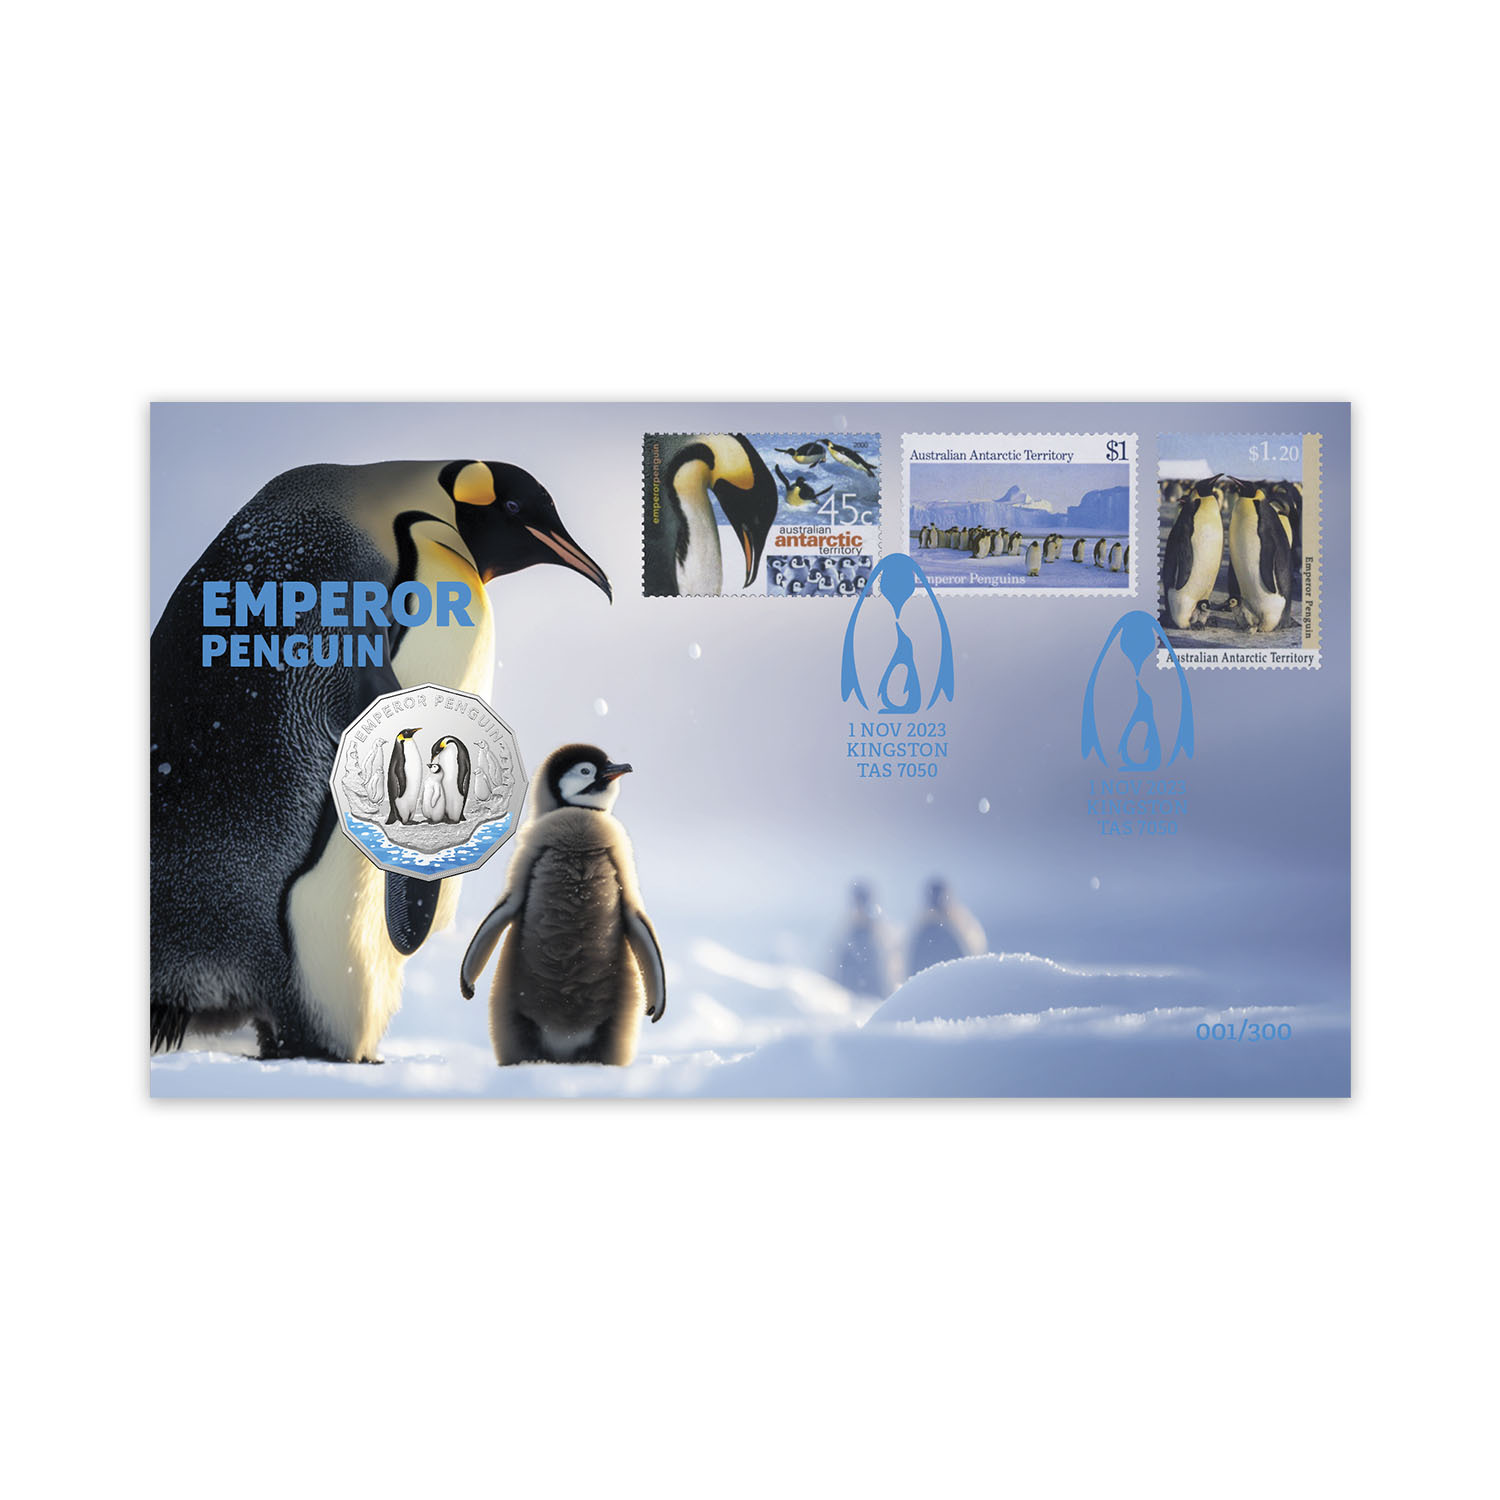 Gentoo penguin – Australian Antarctic Program